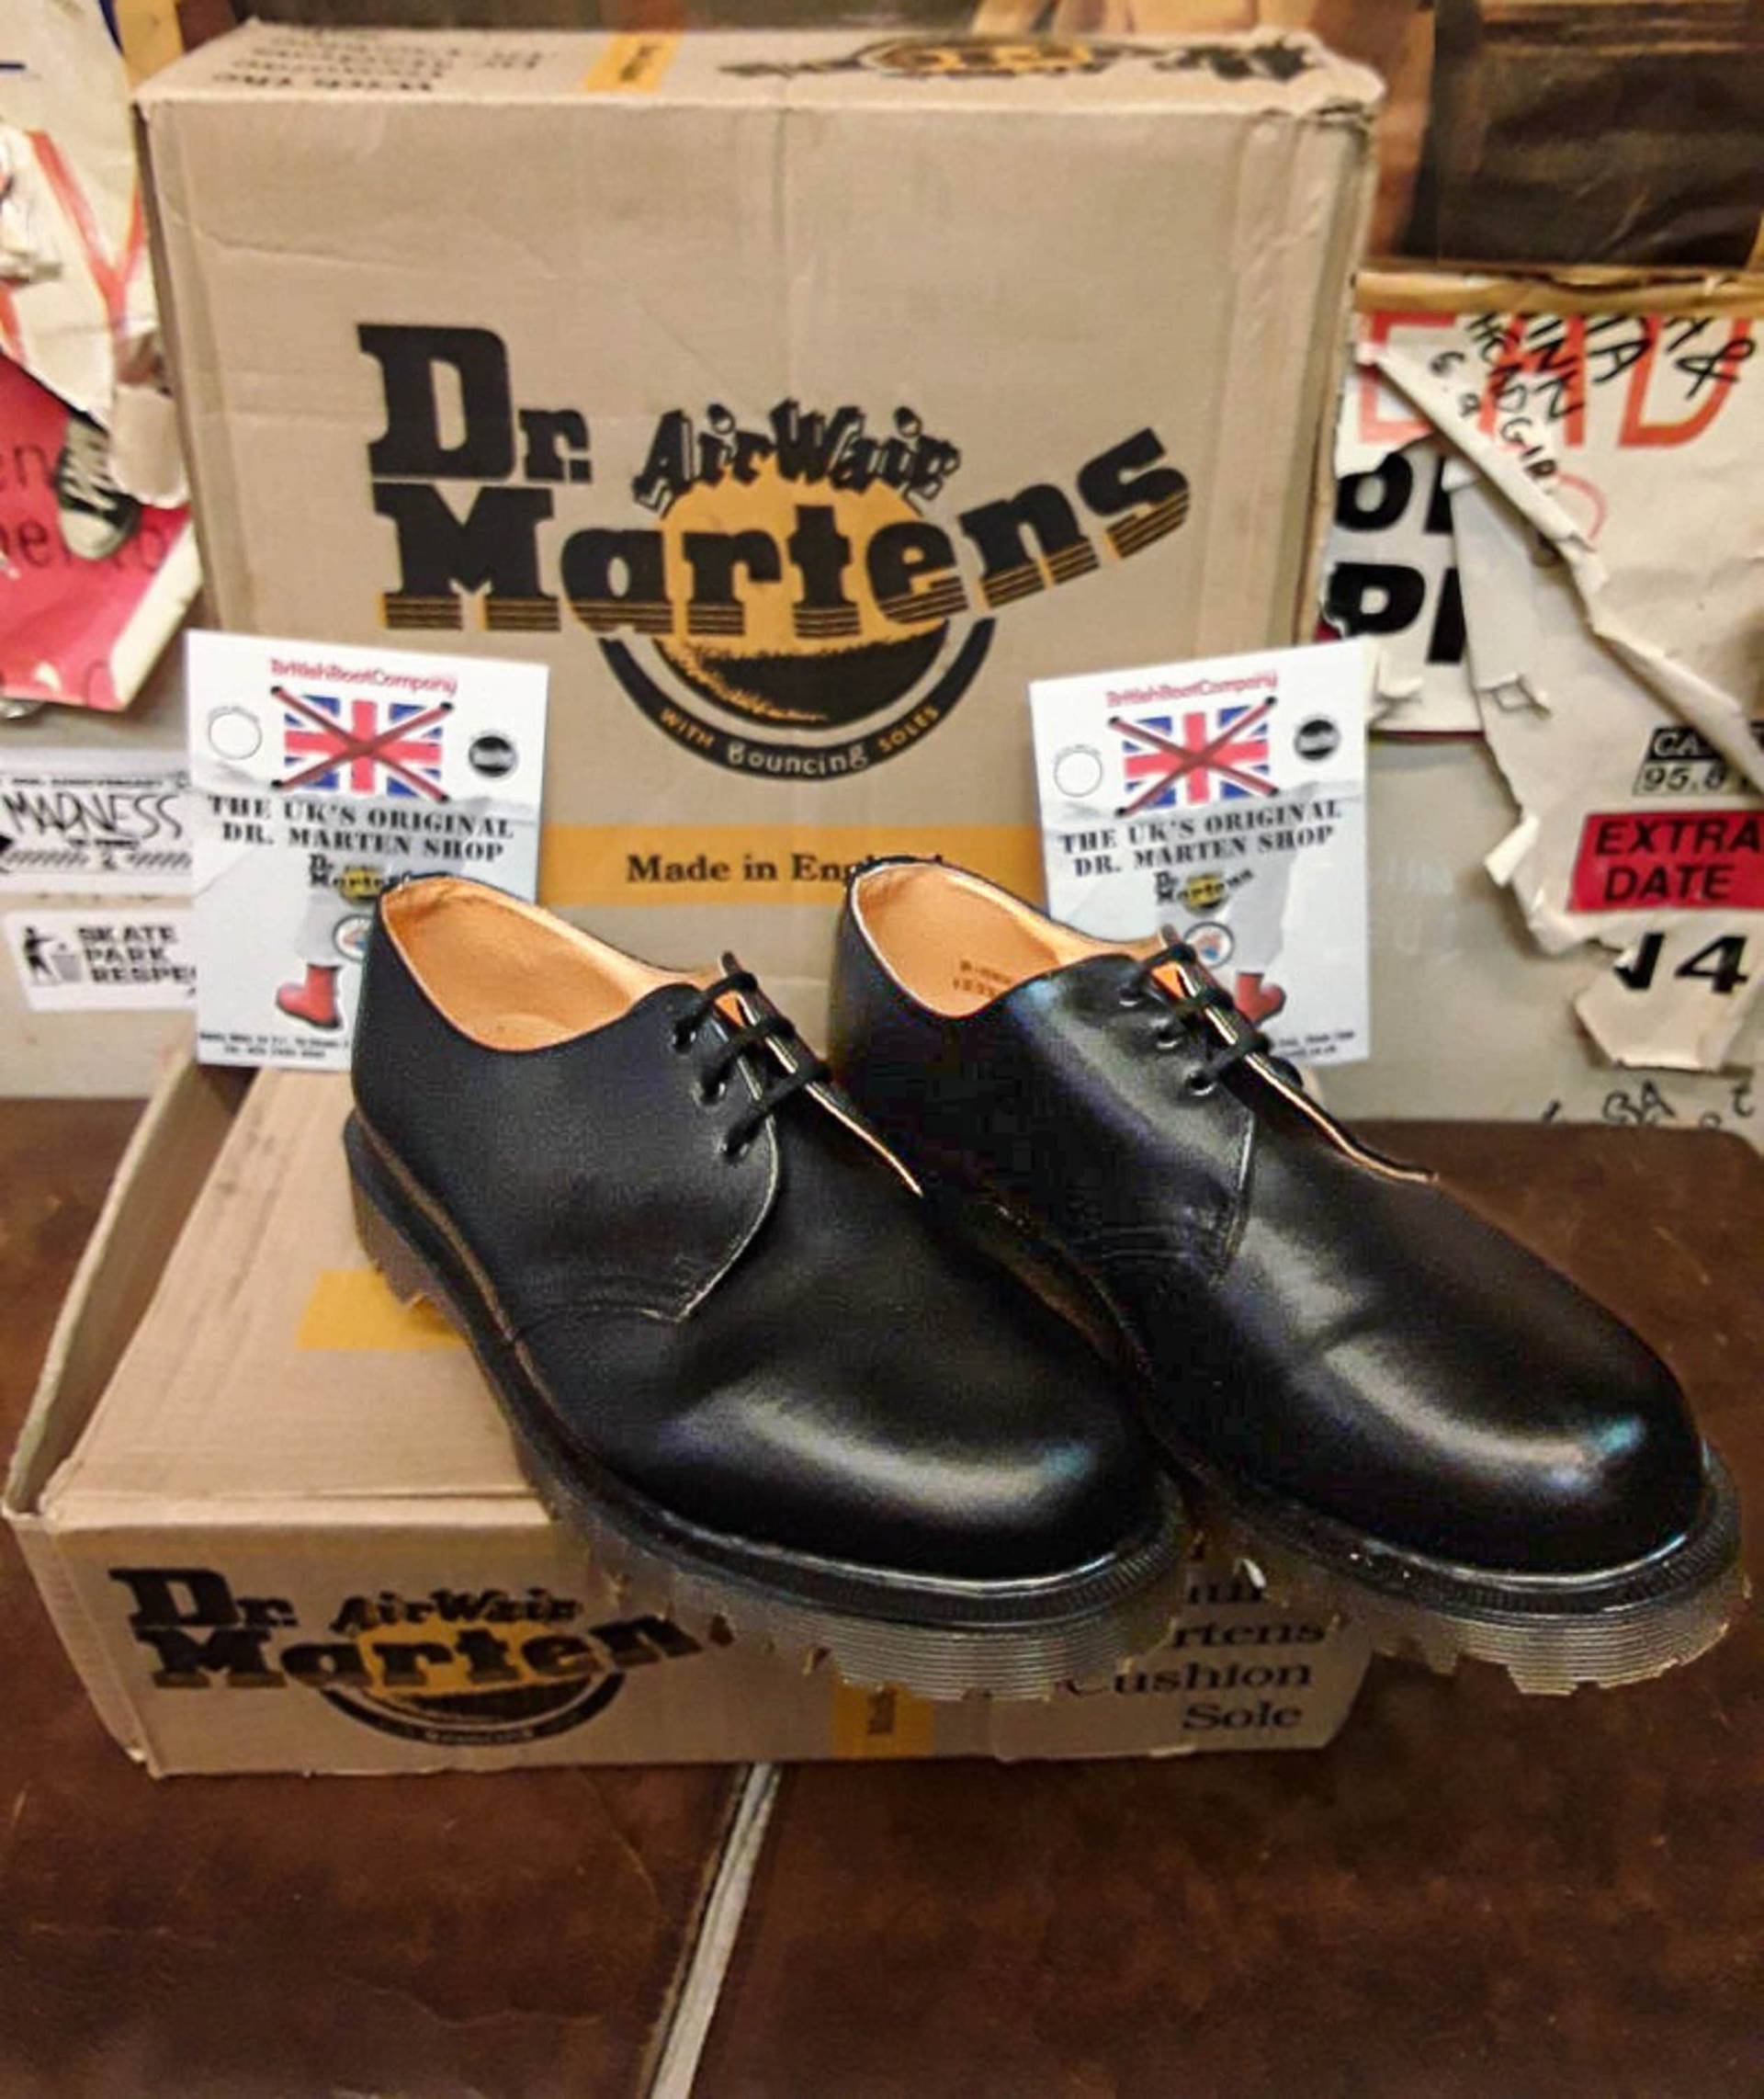 Dr Martens Schwarze Schuhe, Made in England, Ben Sole, Herren Lederschuhe/Verschiedene Größen 8249 von BritishBootVintage